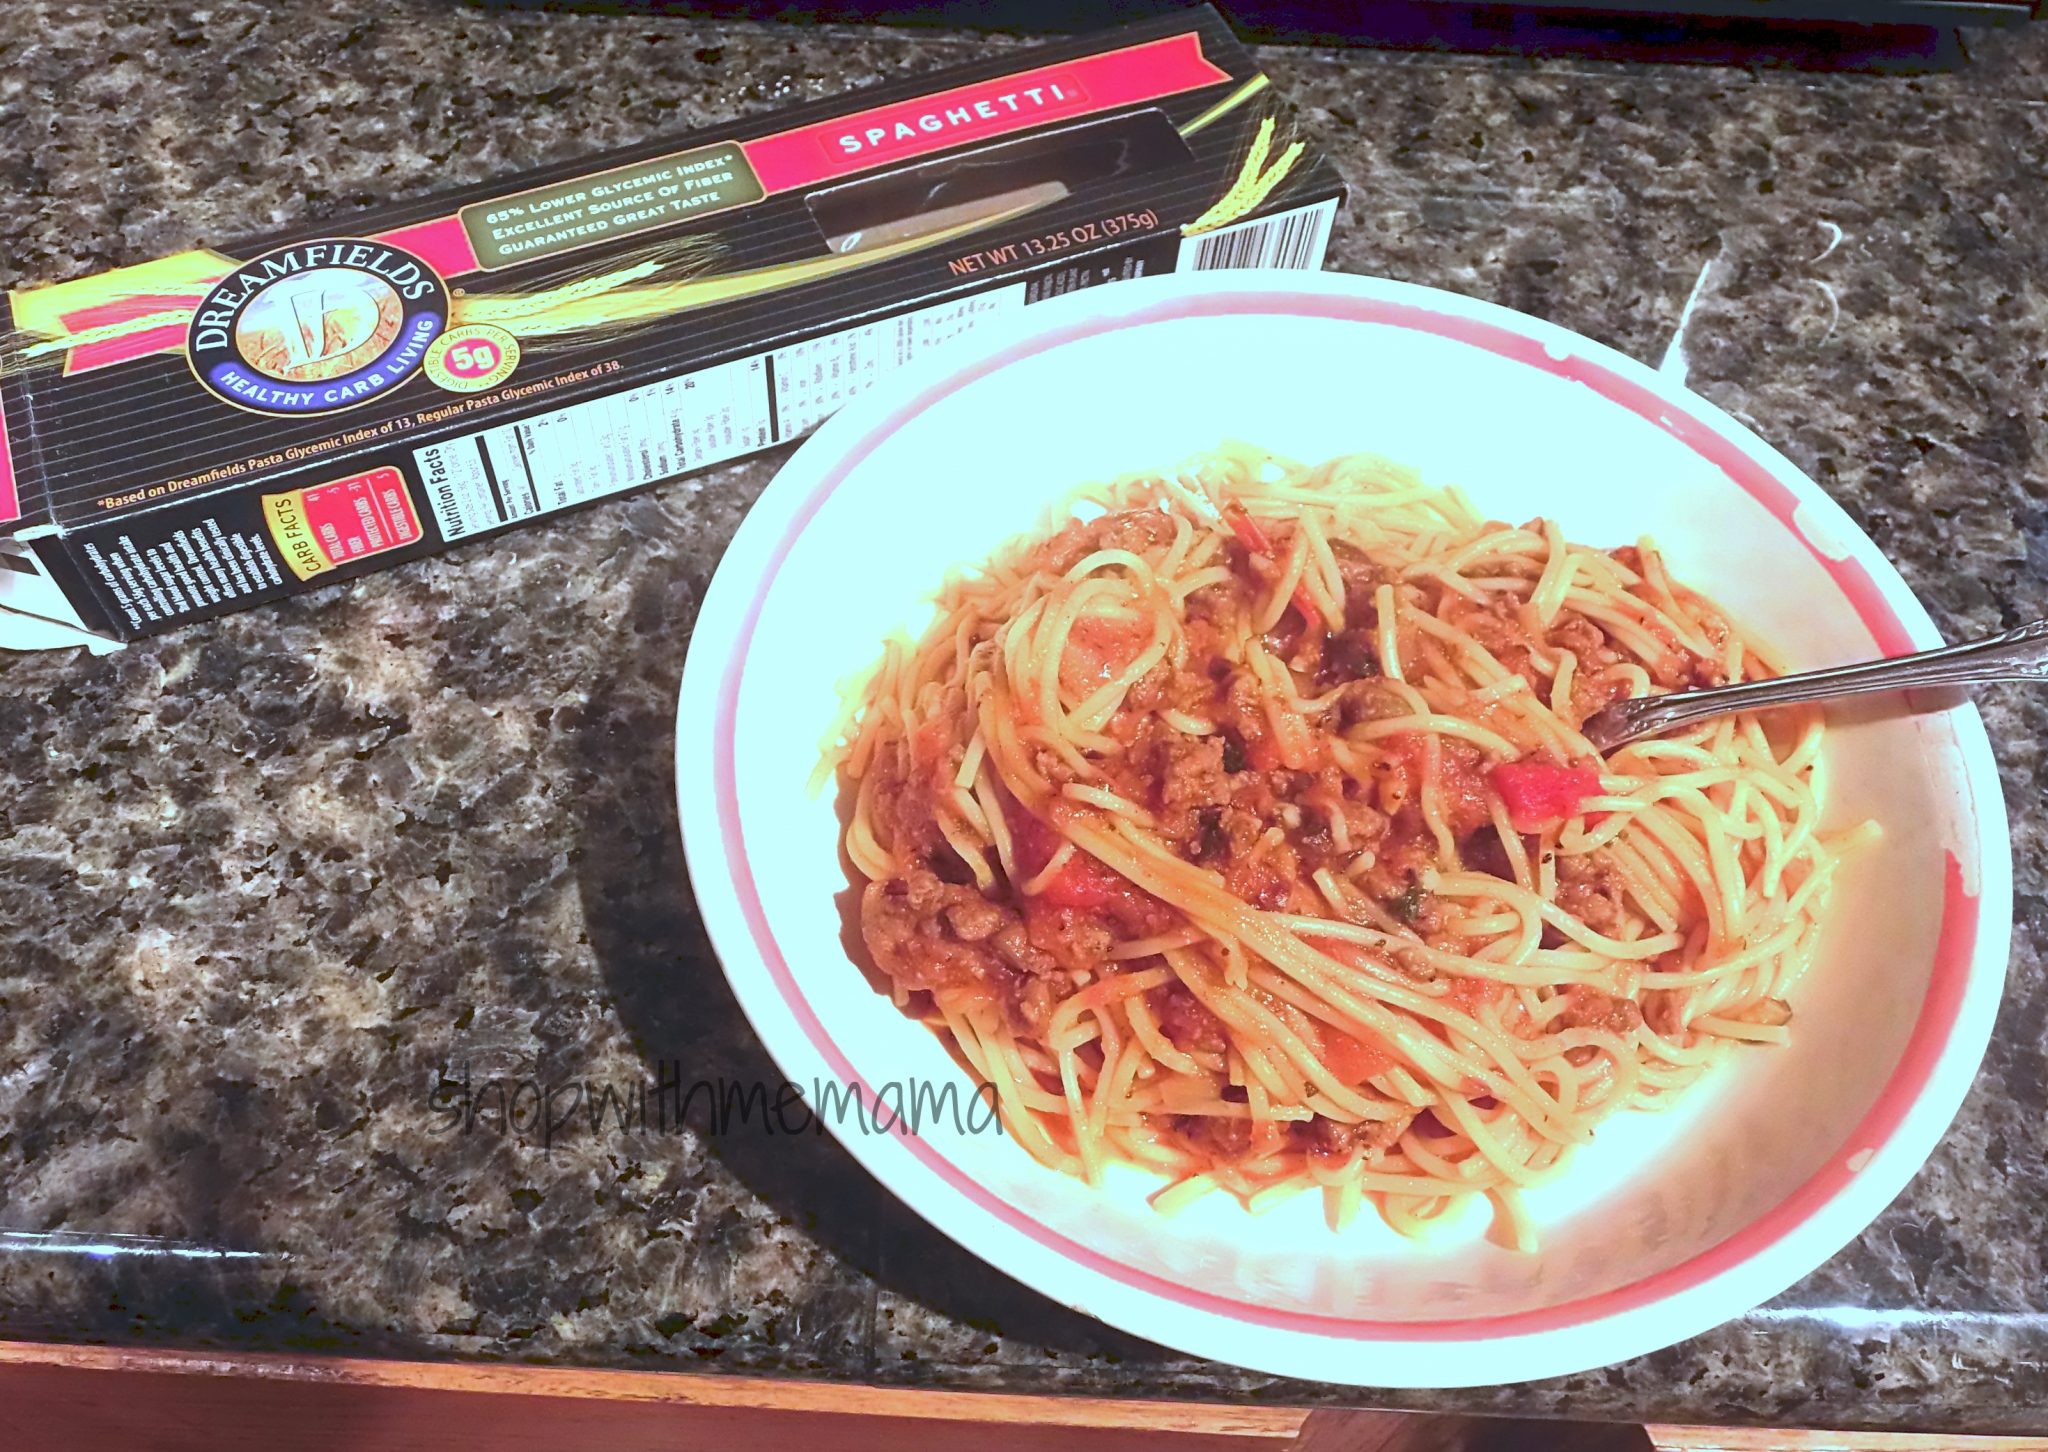 Easy & Delicious Spaghetti Recipe